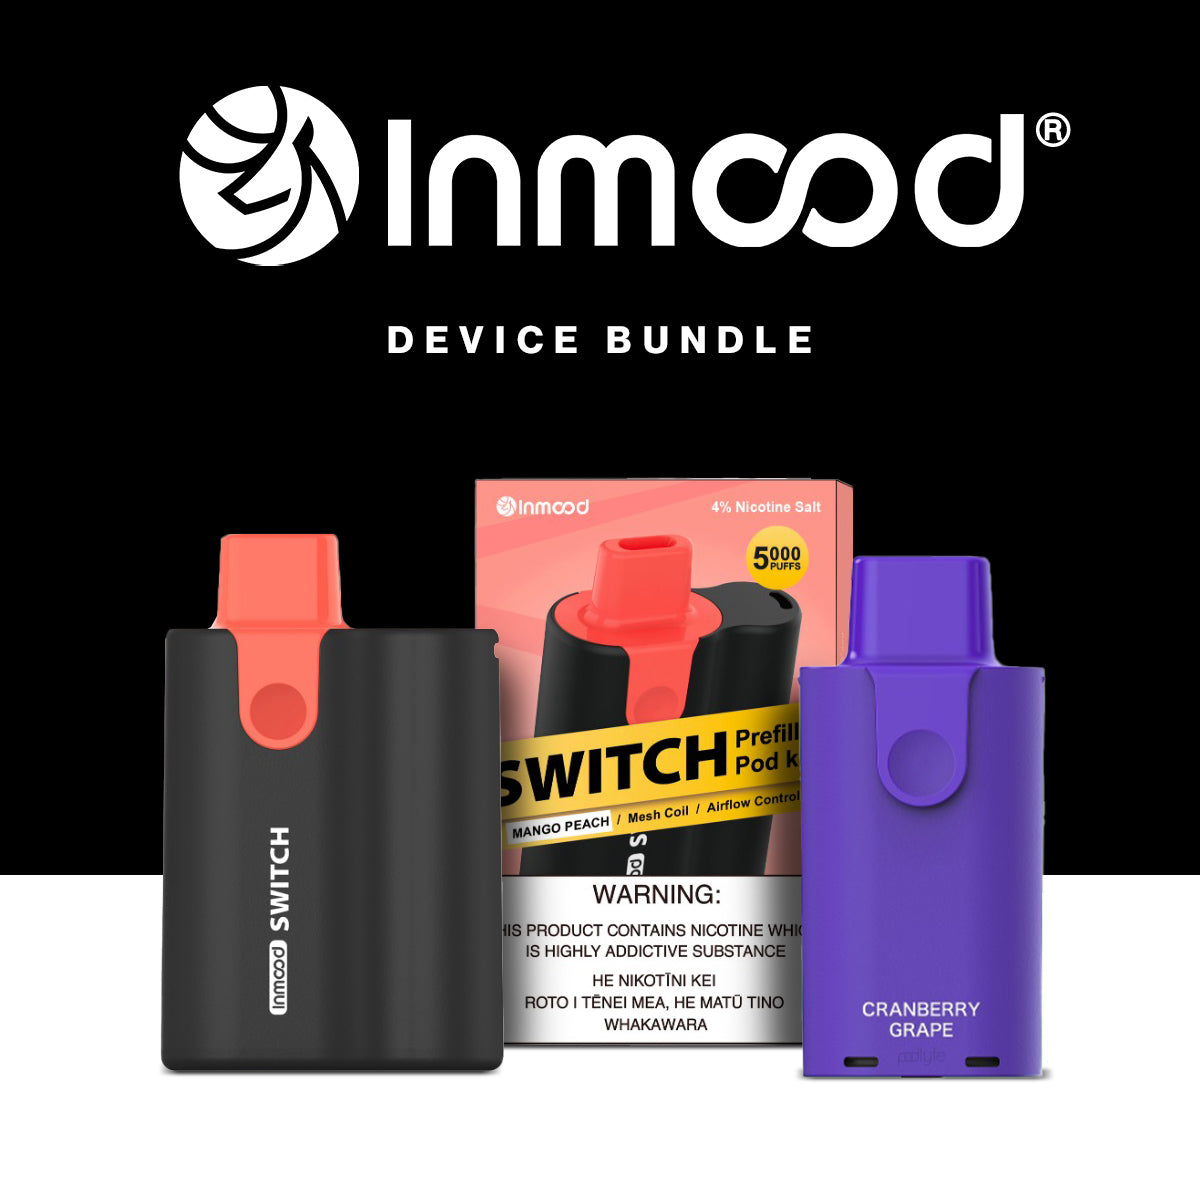 Inmood Switch Pod Kit